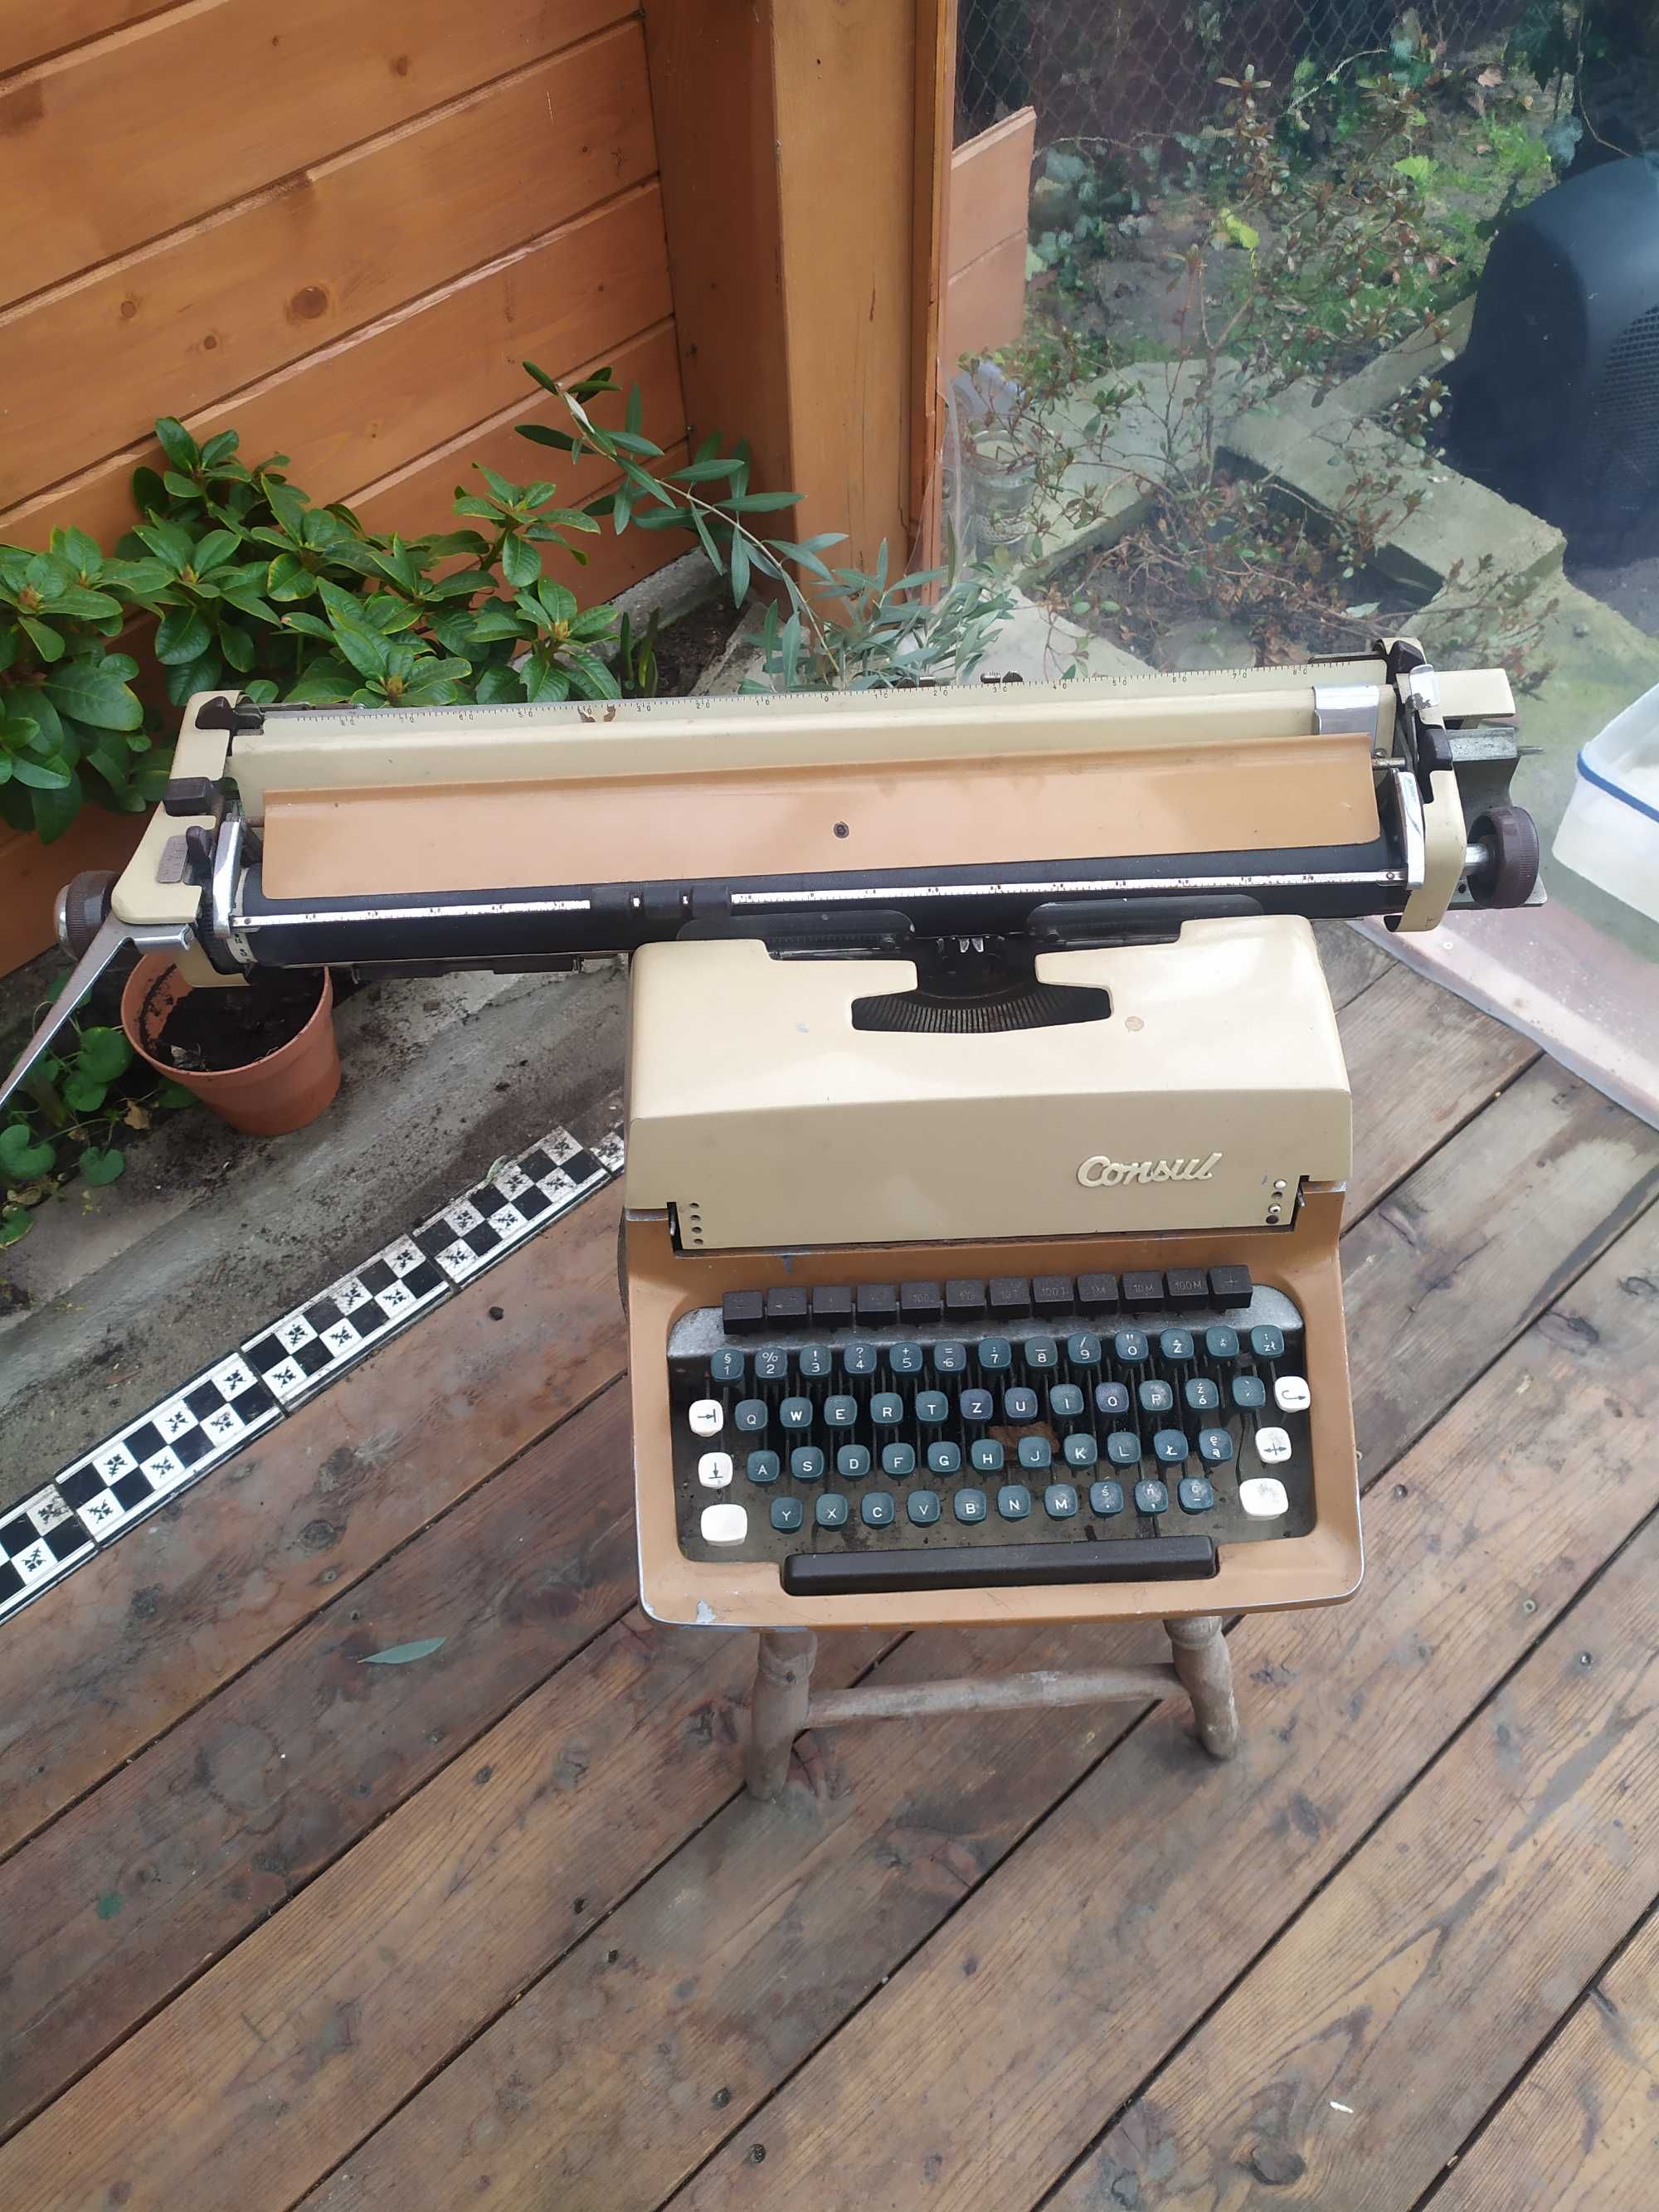 Maszyna do pisania, sprawna, marki Consul cena 60 zł